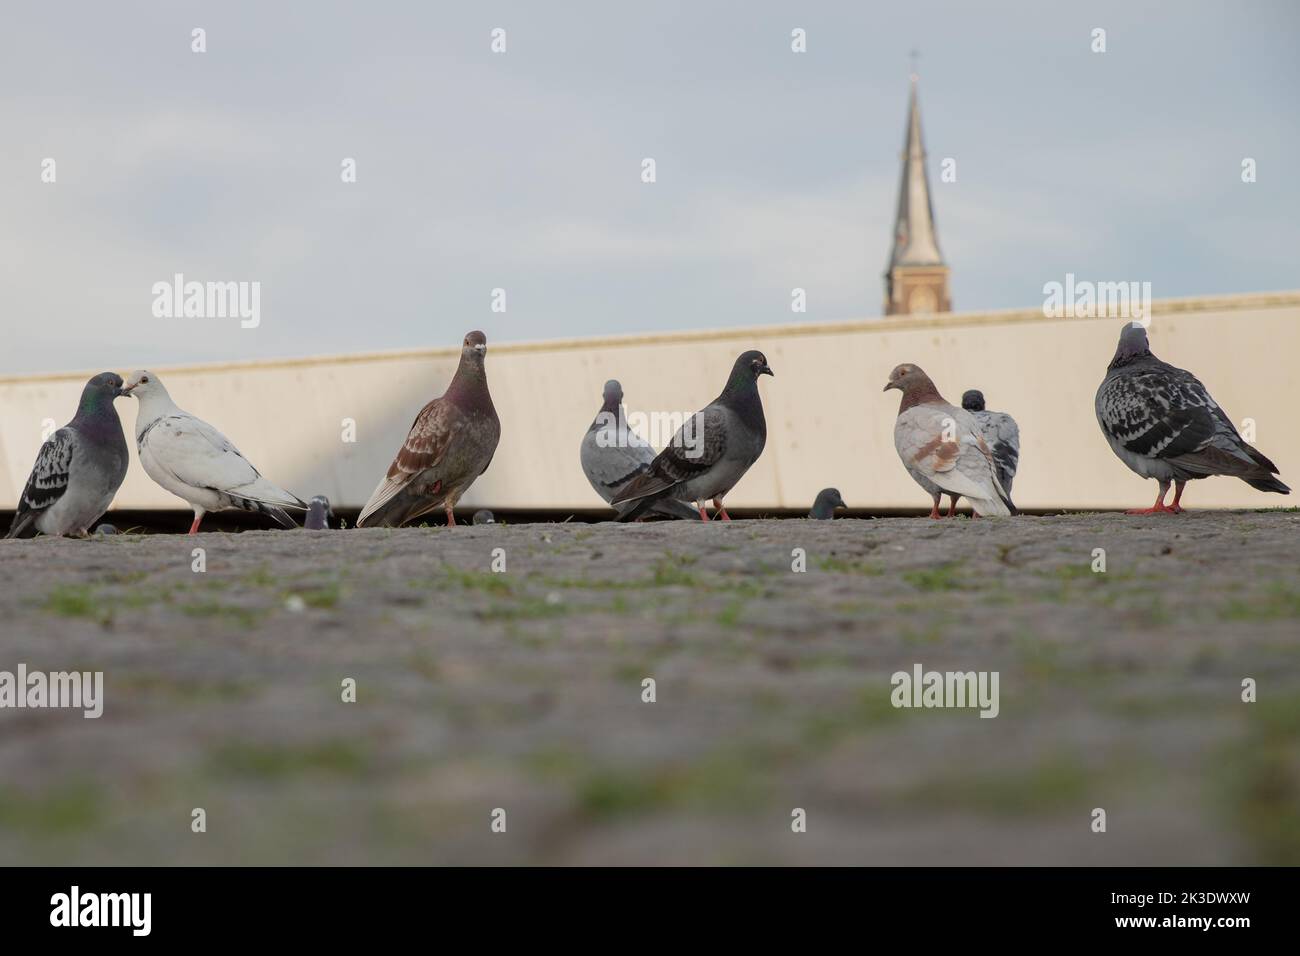 Gros plan de pigeons au sol Banque D'Images